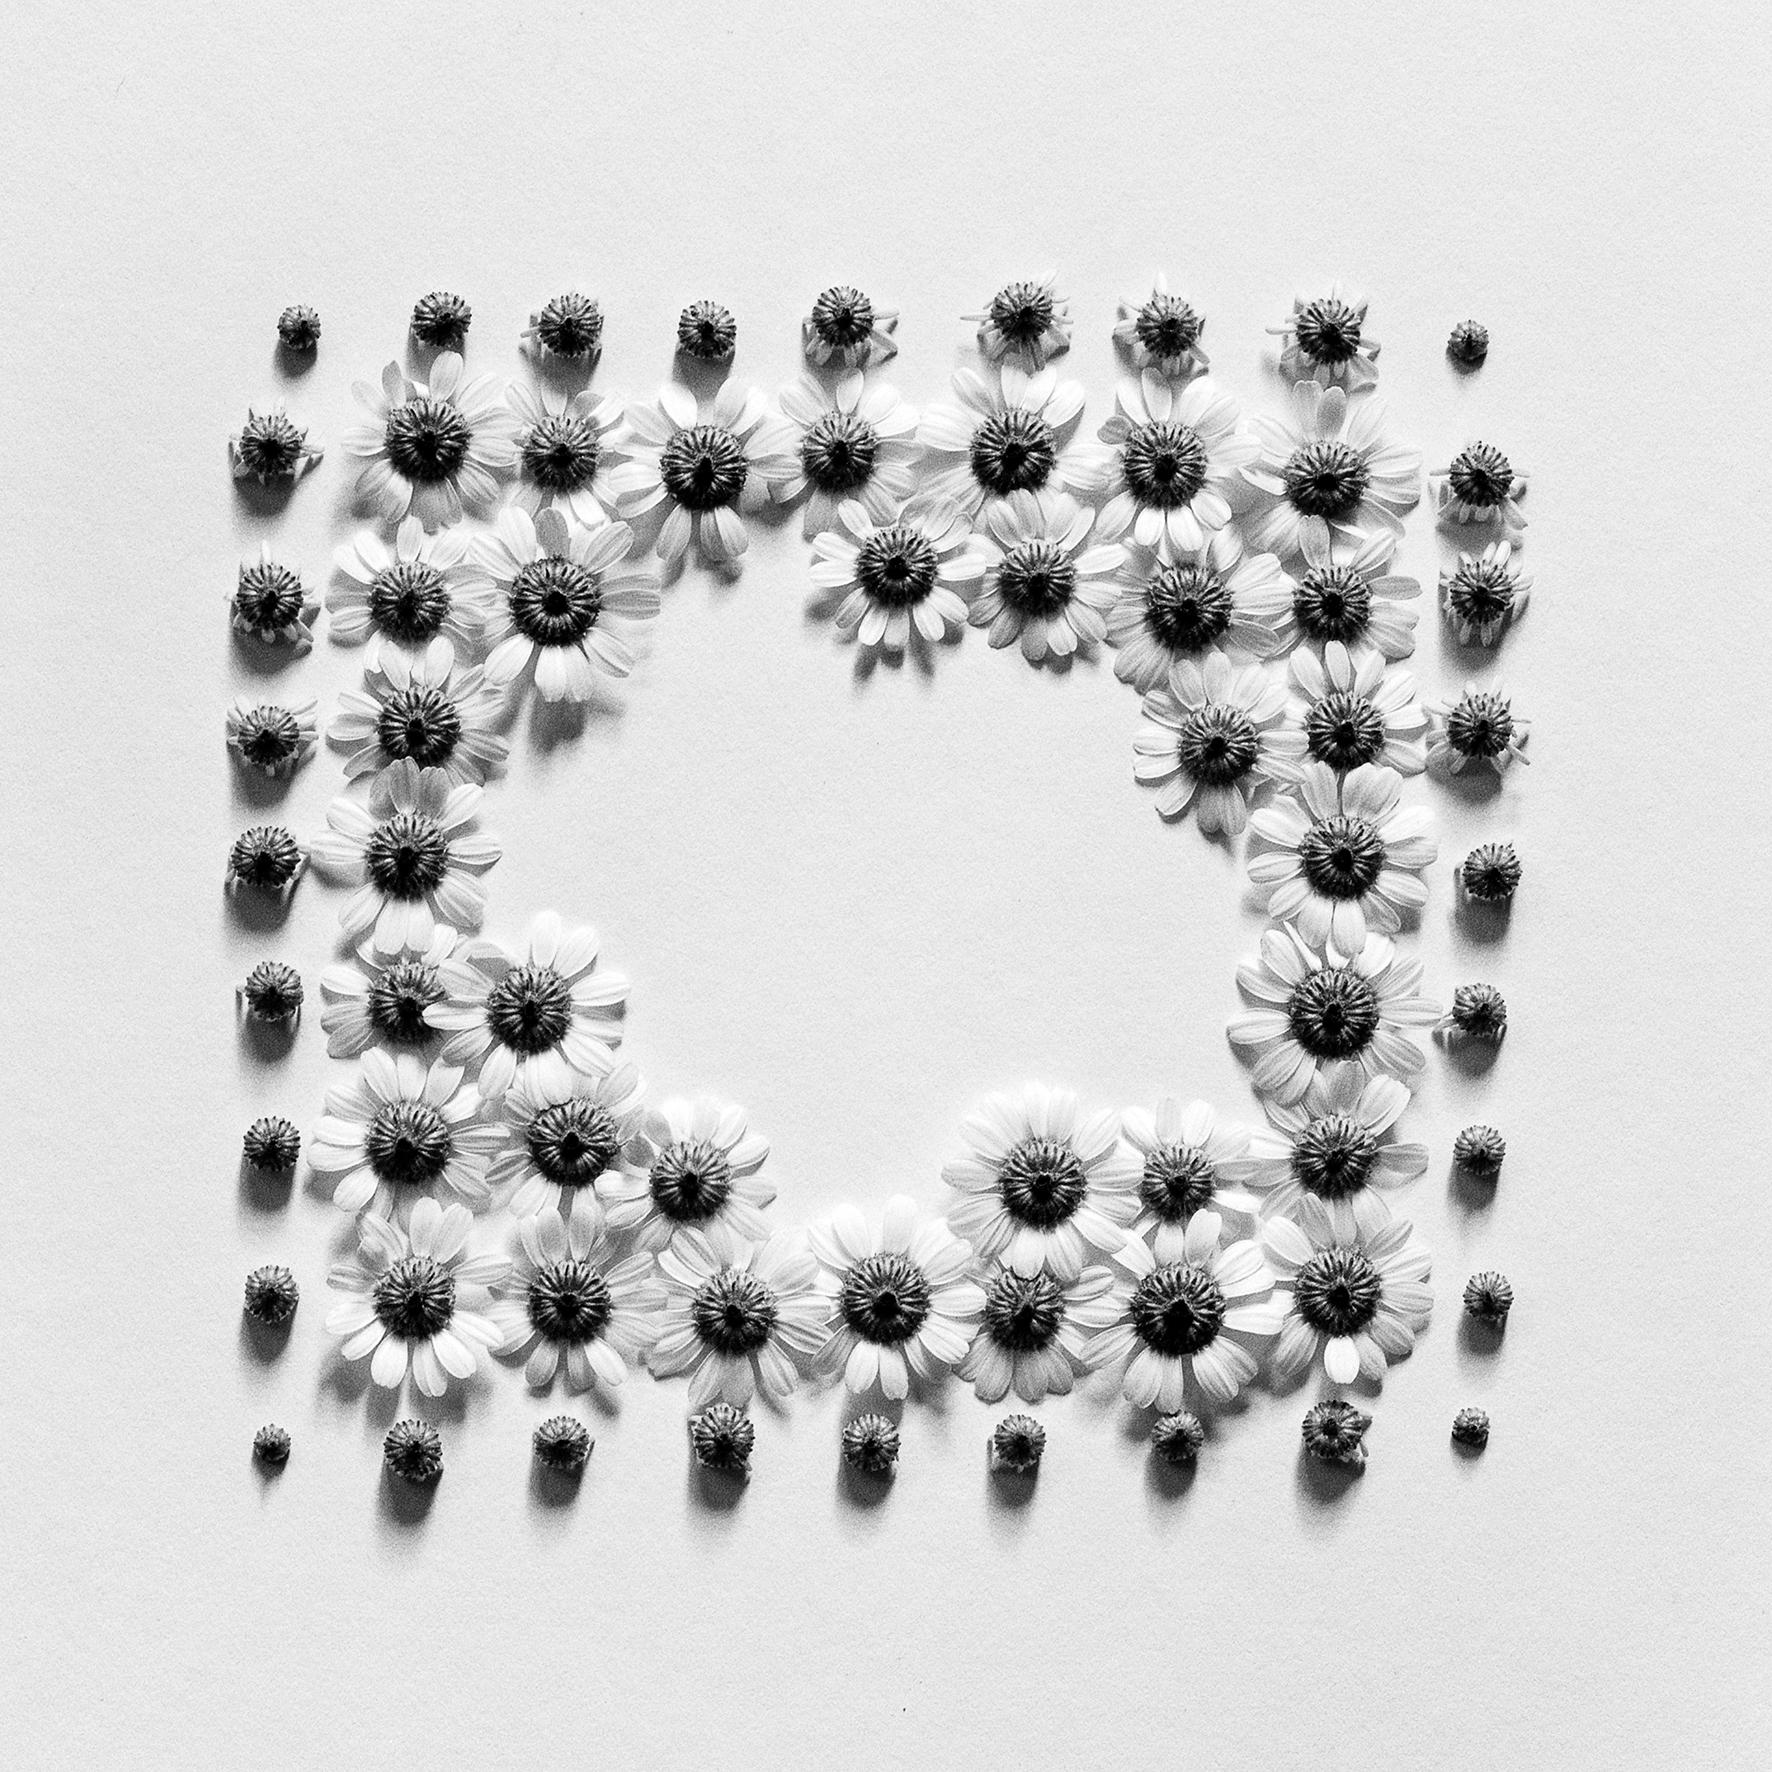 Ugne Pouwell Black and White Photograph – Ramunės - abstrakte analoge Schwarz-Weiß-Blumenfotografie, Ltd. 20